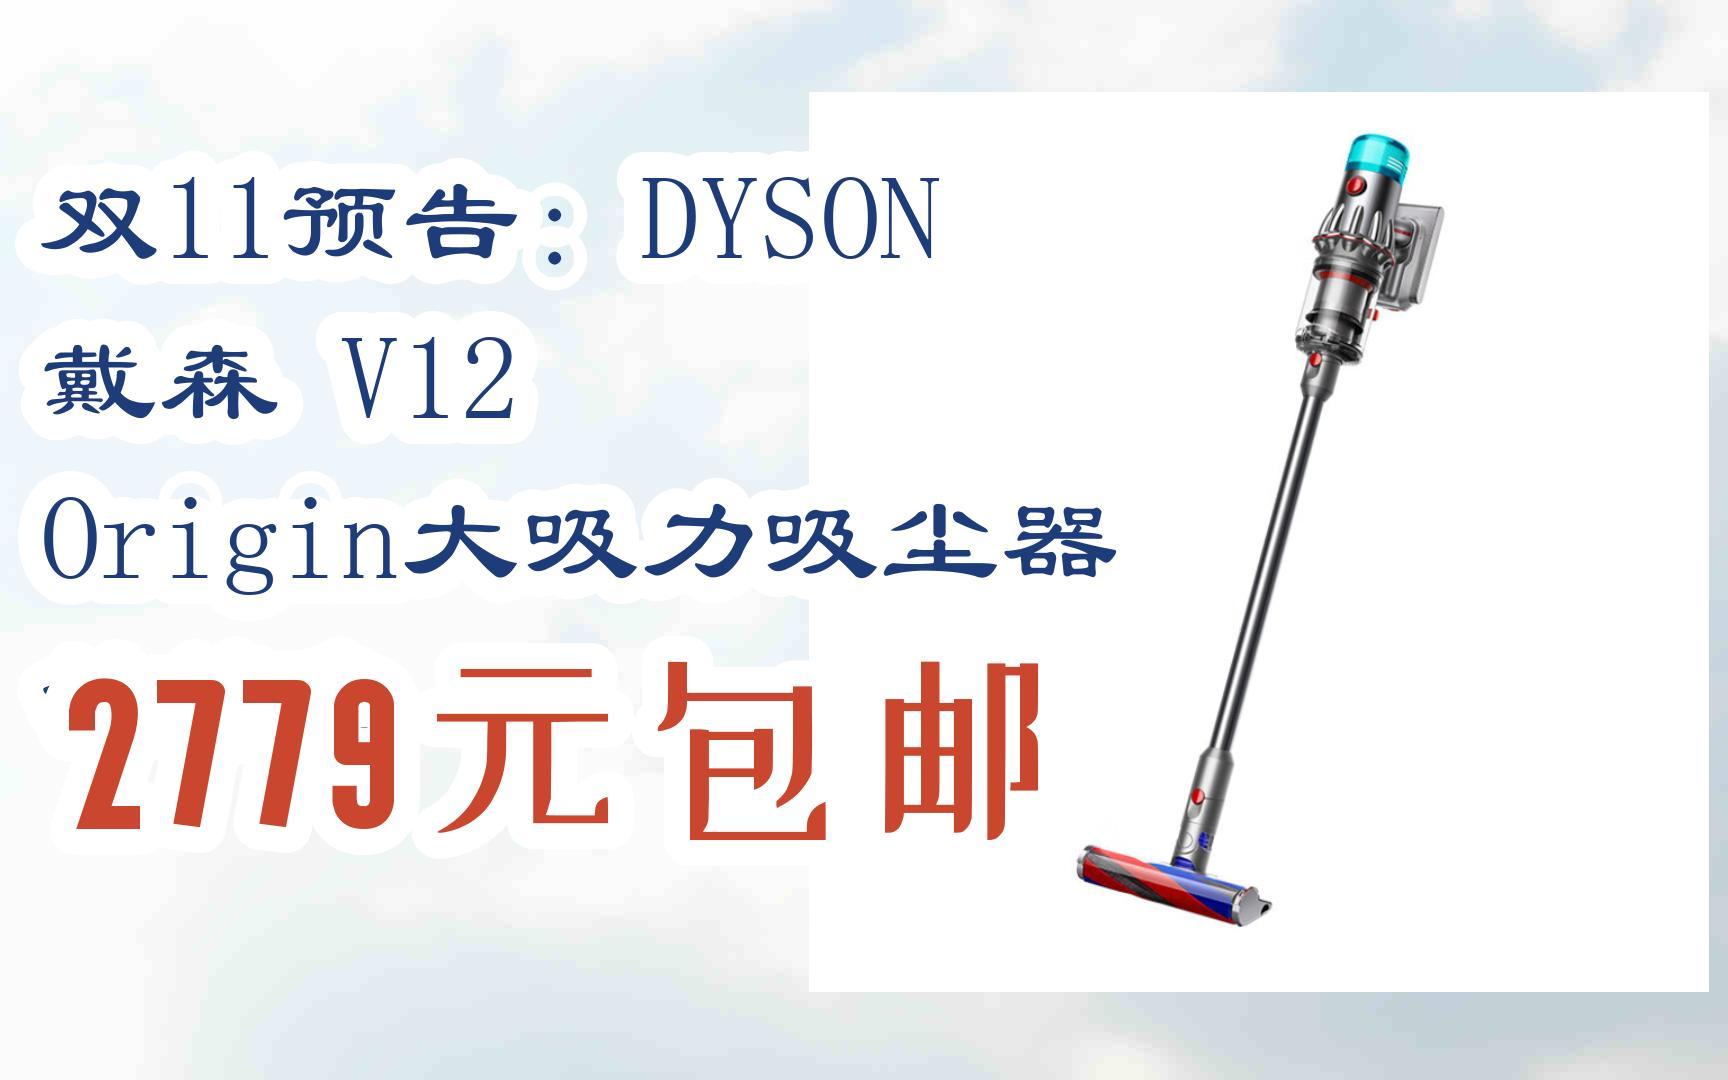 【京东双11】双11预告:dyson 戴森 v12 origin大吸力吸尘器 铁镍色